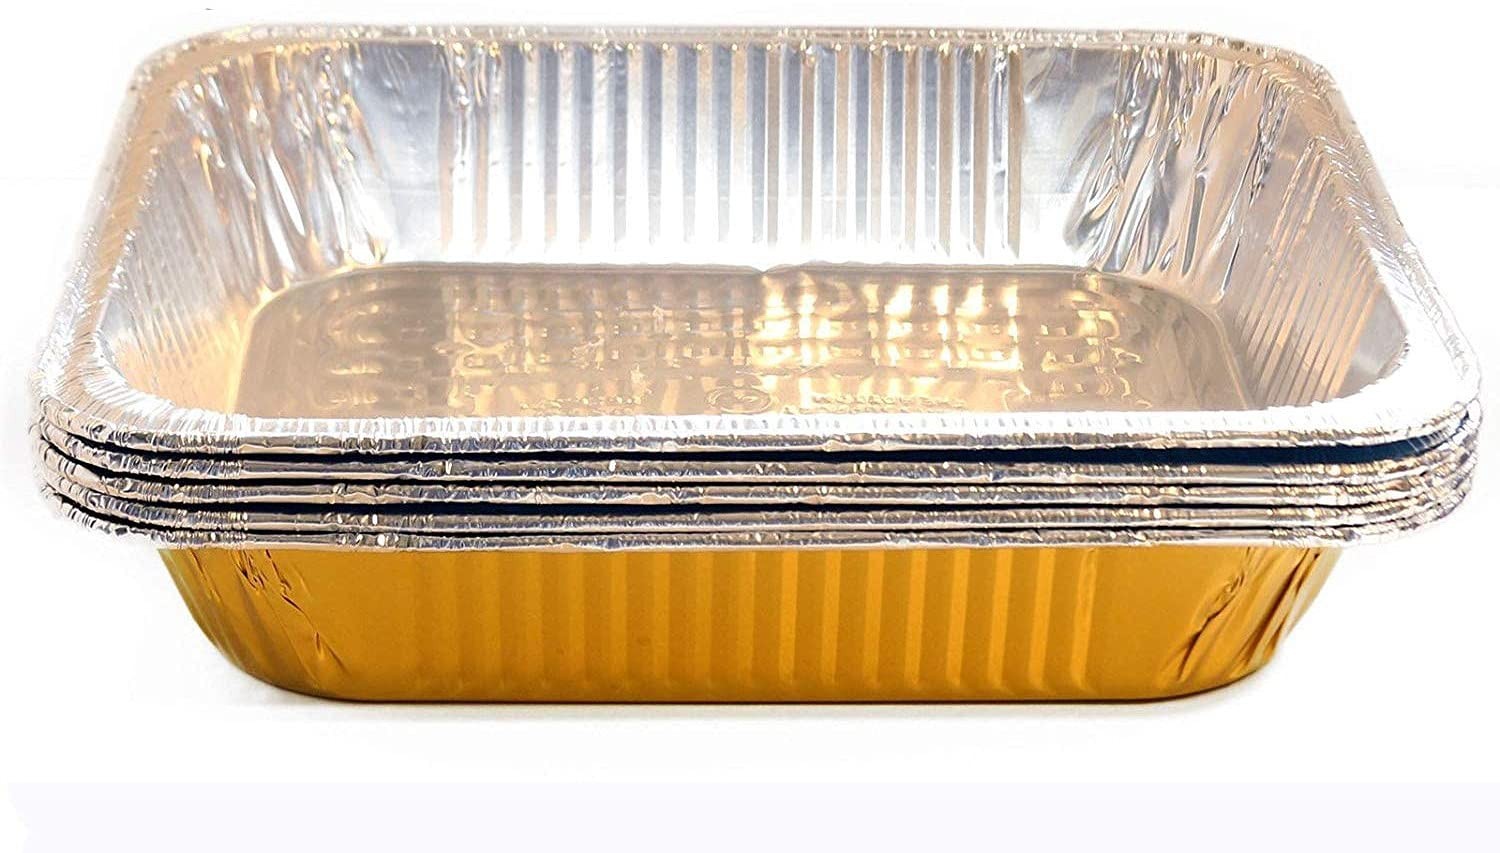 TigerChef Gold Disposable Half Size Aluminum Foil Steam Table Pans 9" x 13" - 5 pcs